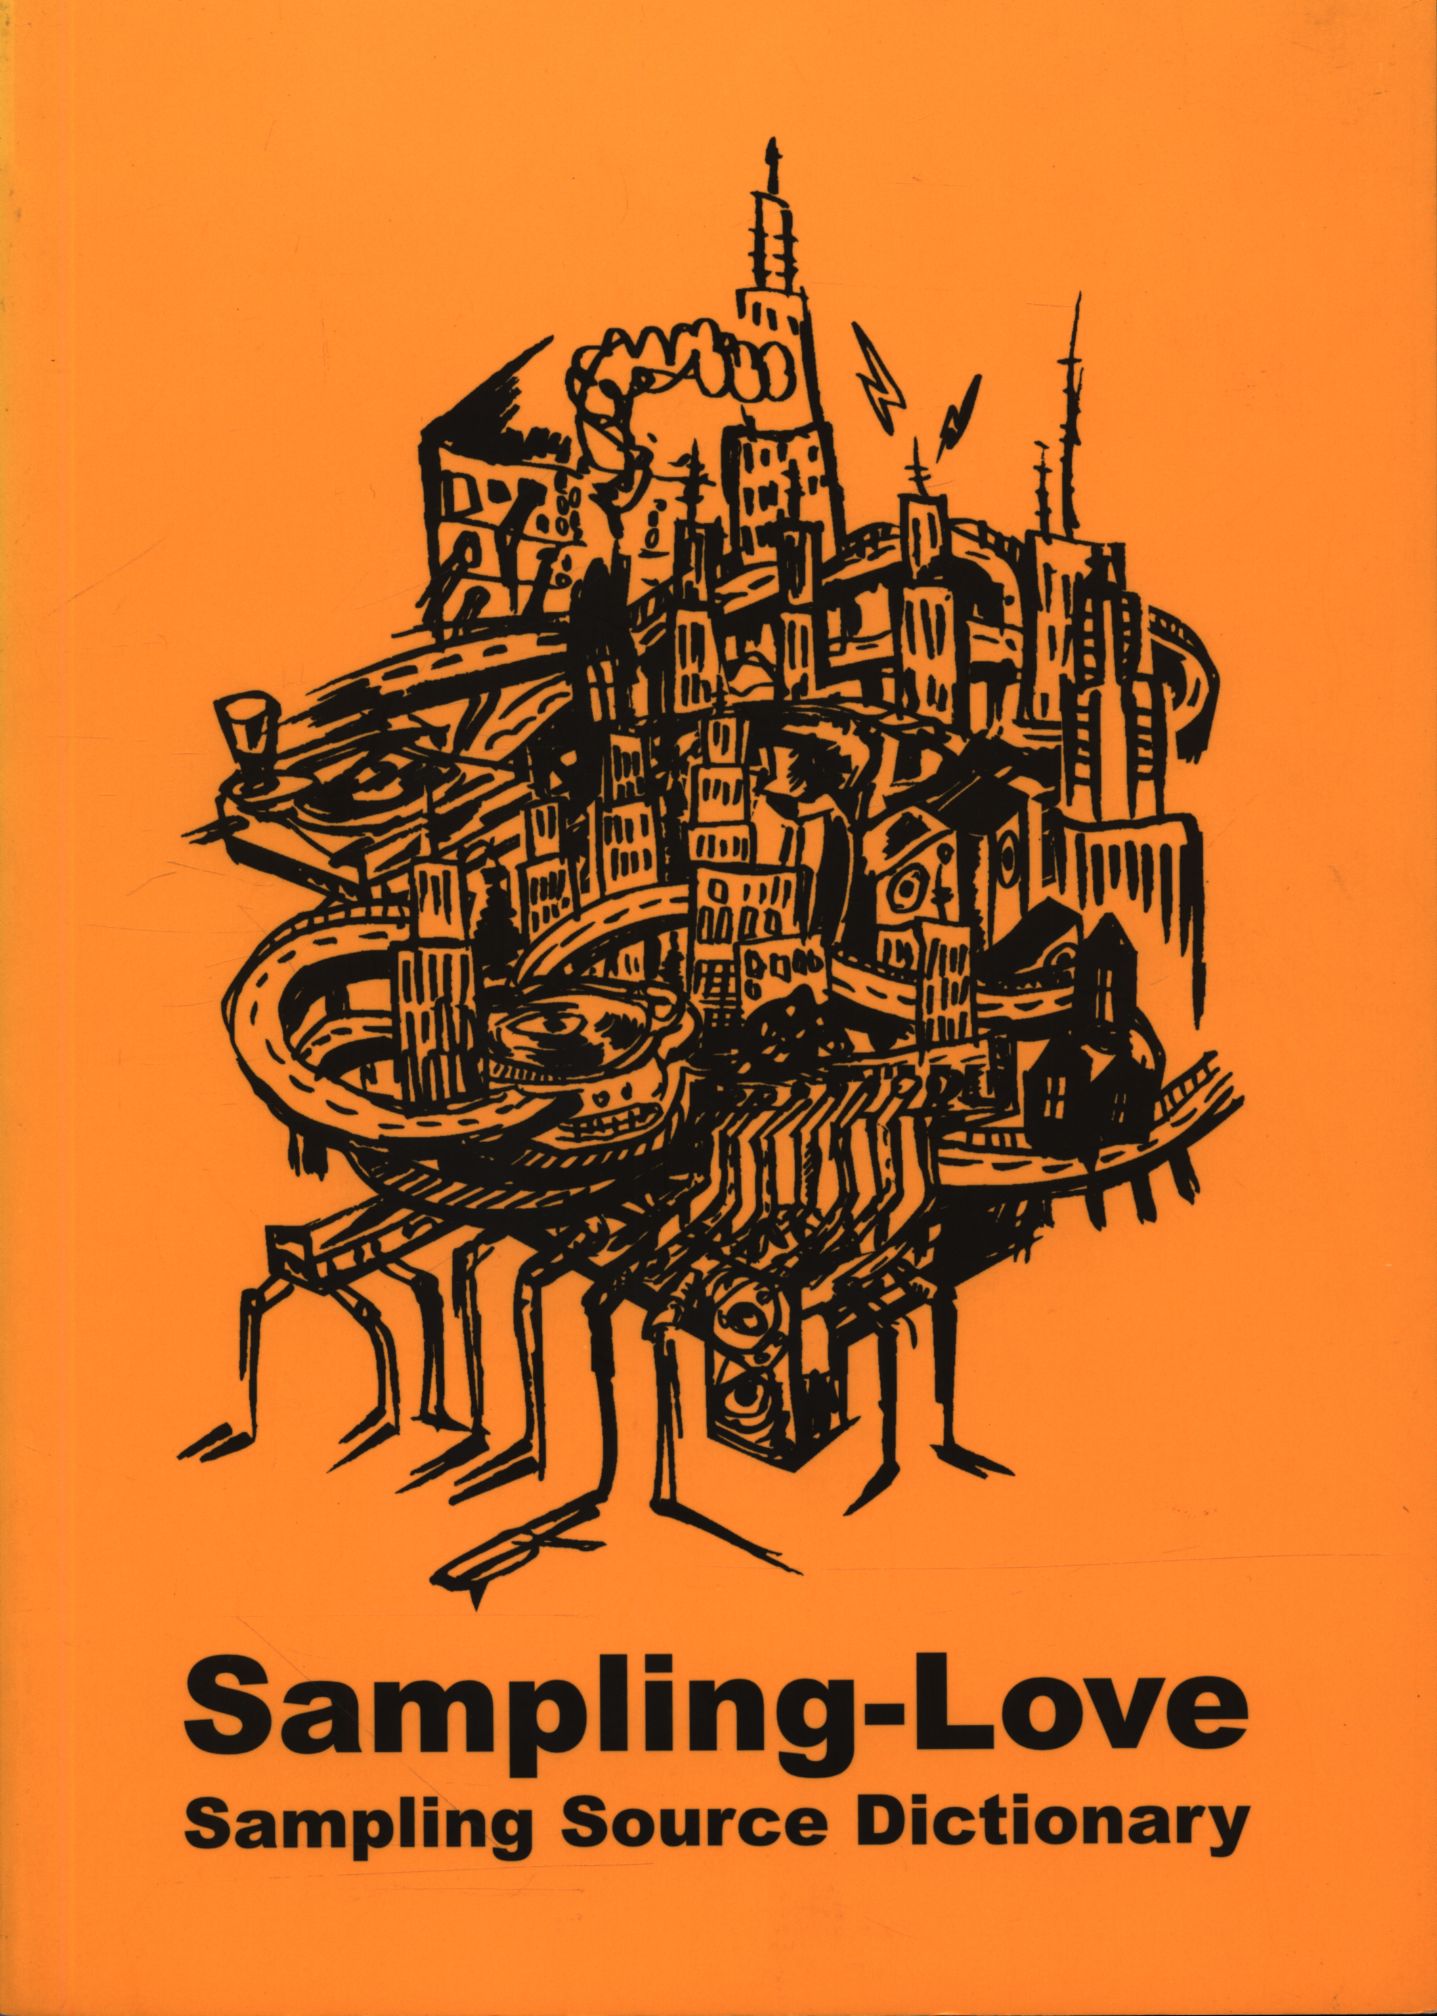 Sampling- Love 元ネタ曲探しsamplingsou